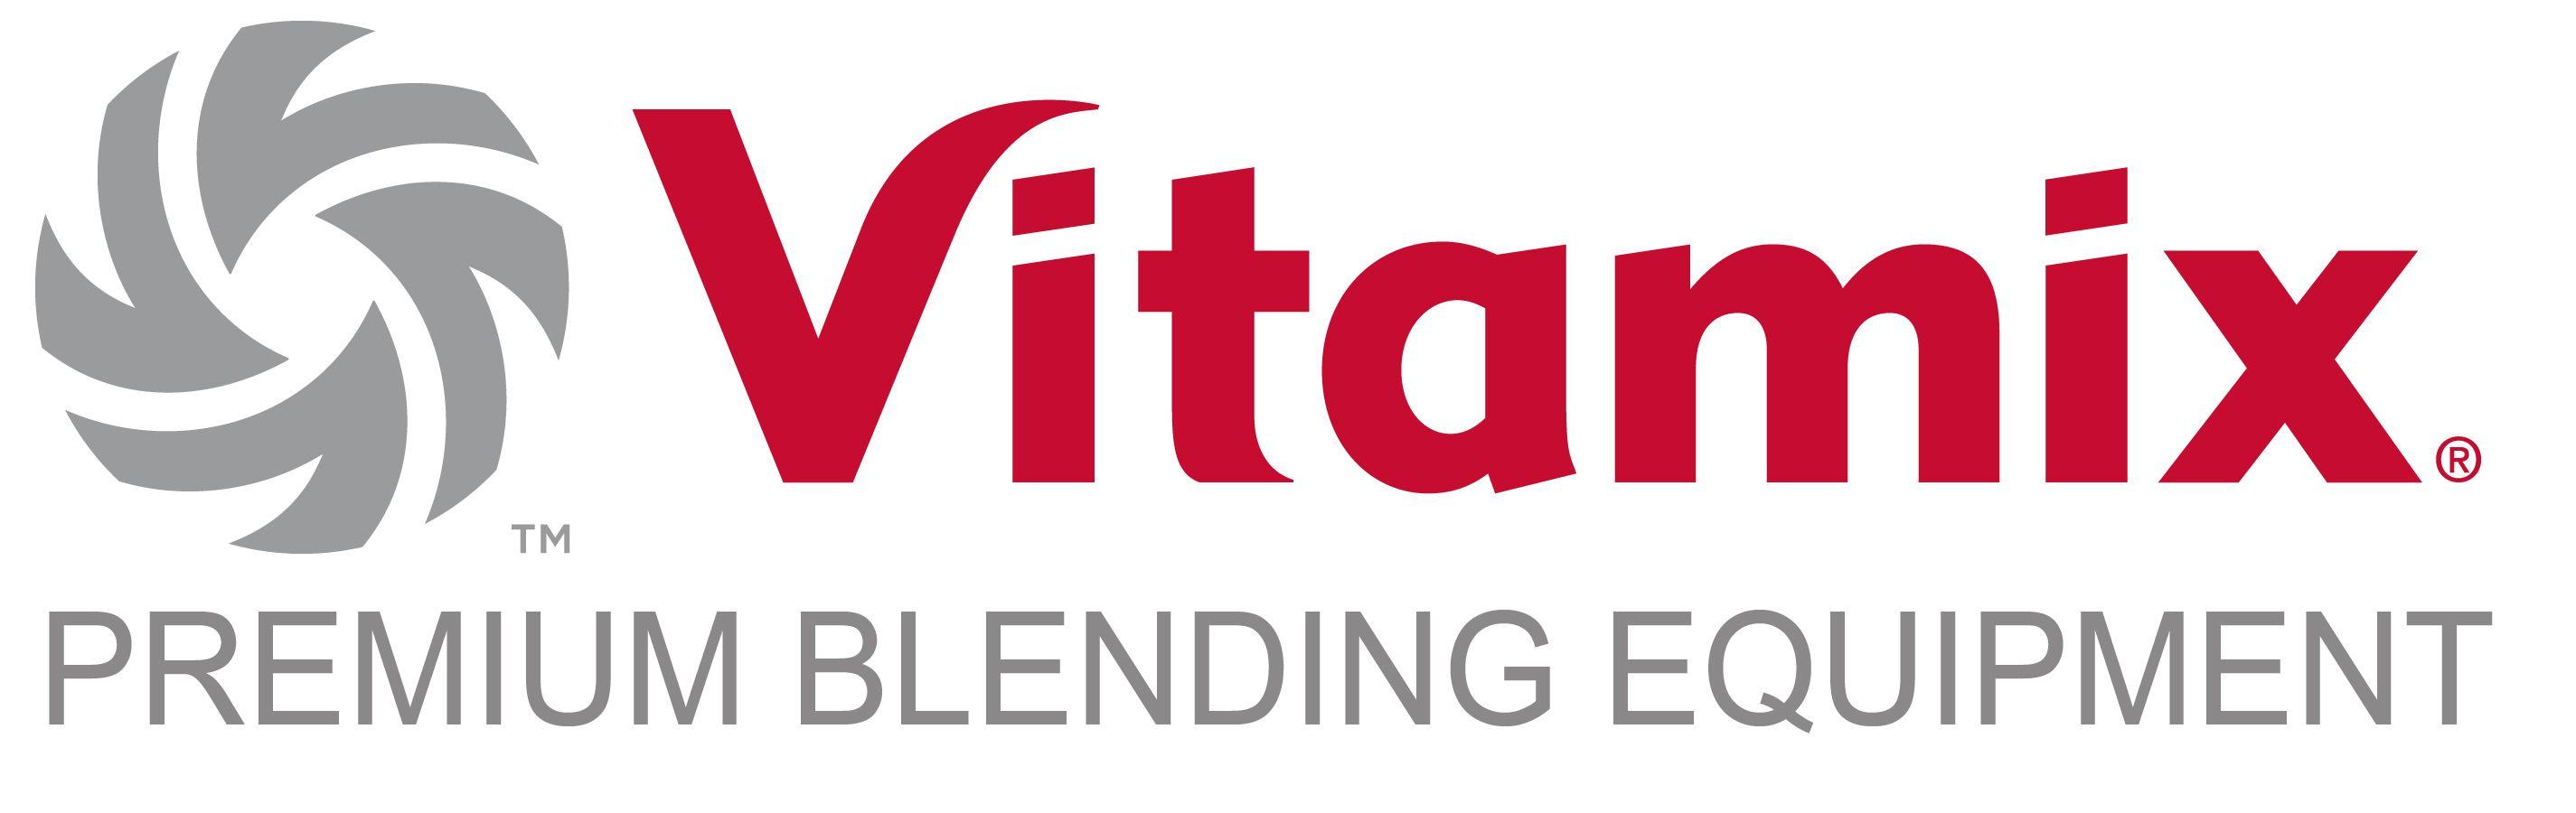 Vitamix Logo - Vitamix